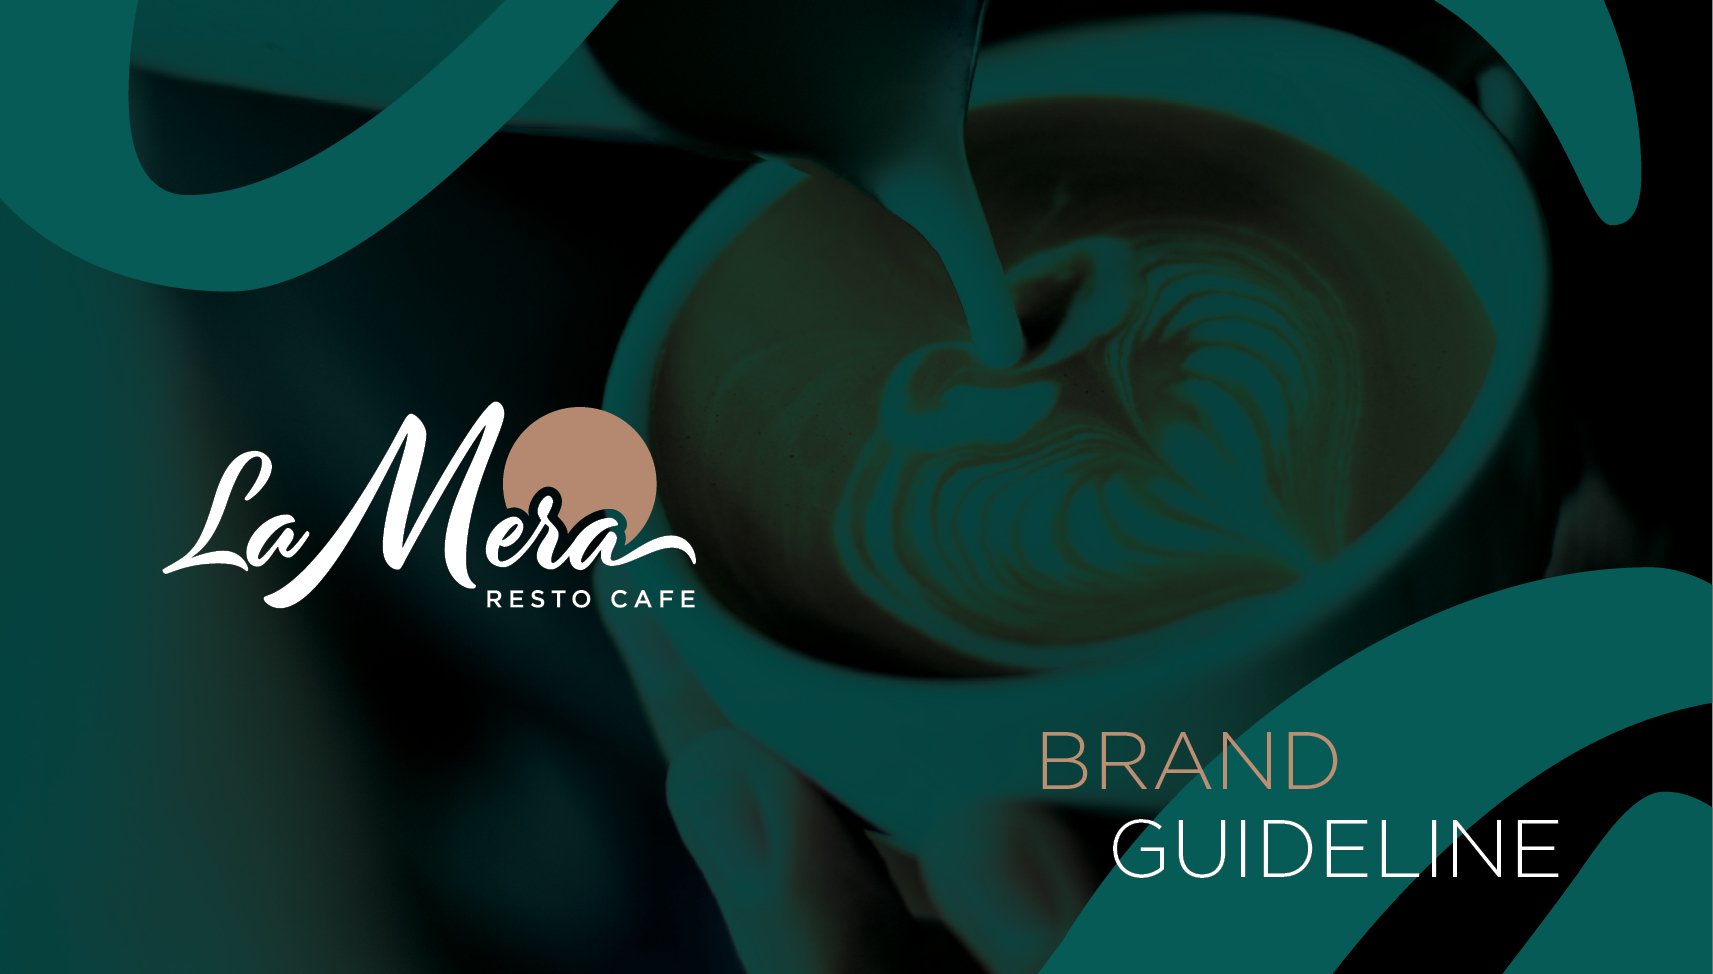 La Mera Brand Guideline